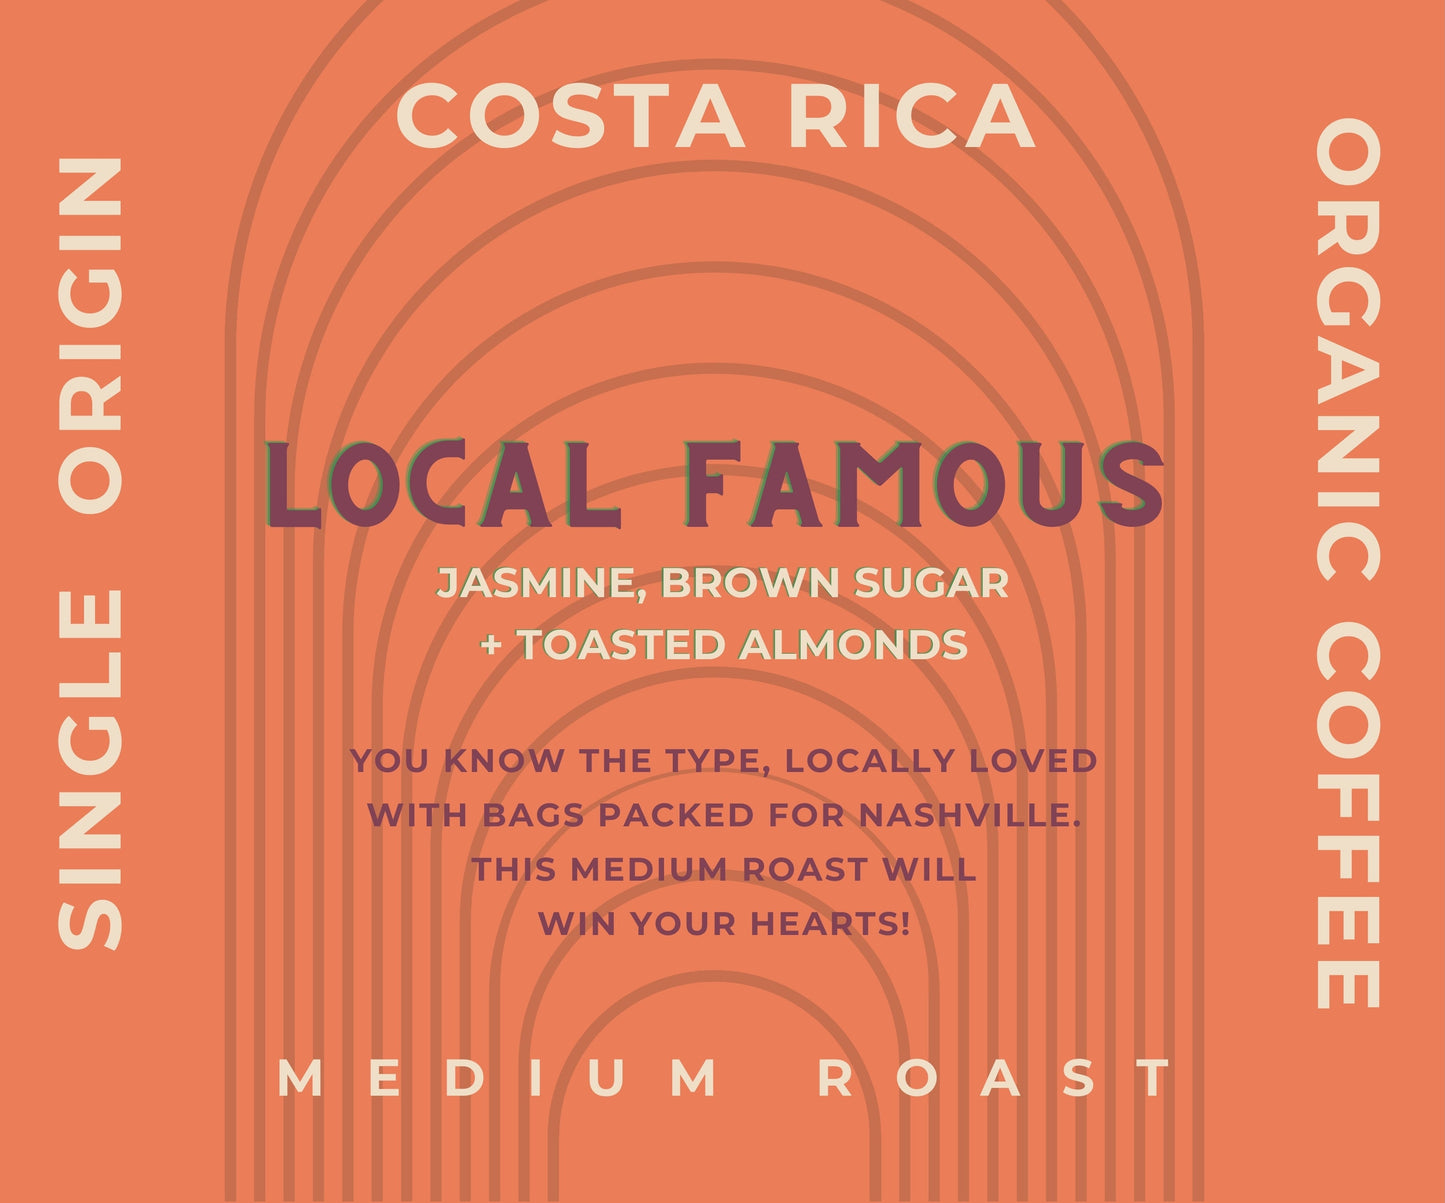 Local Famous - Single Origin Costa Rica - Whole Sale Pricing